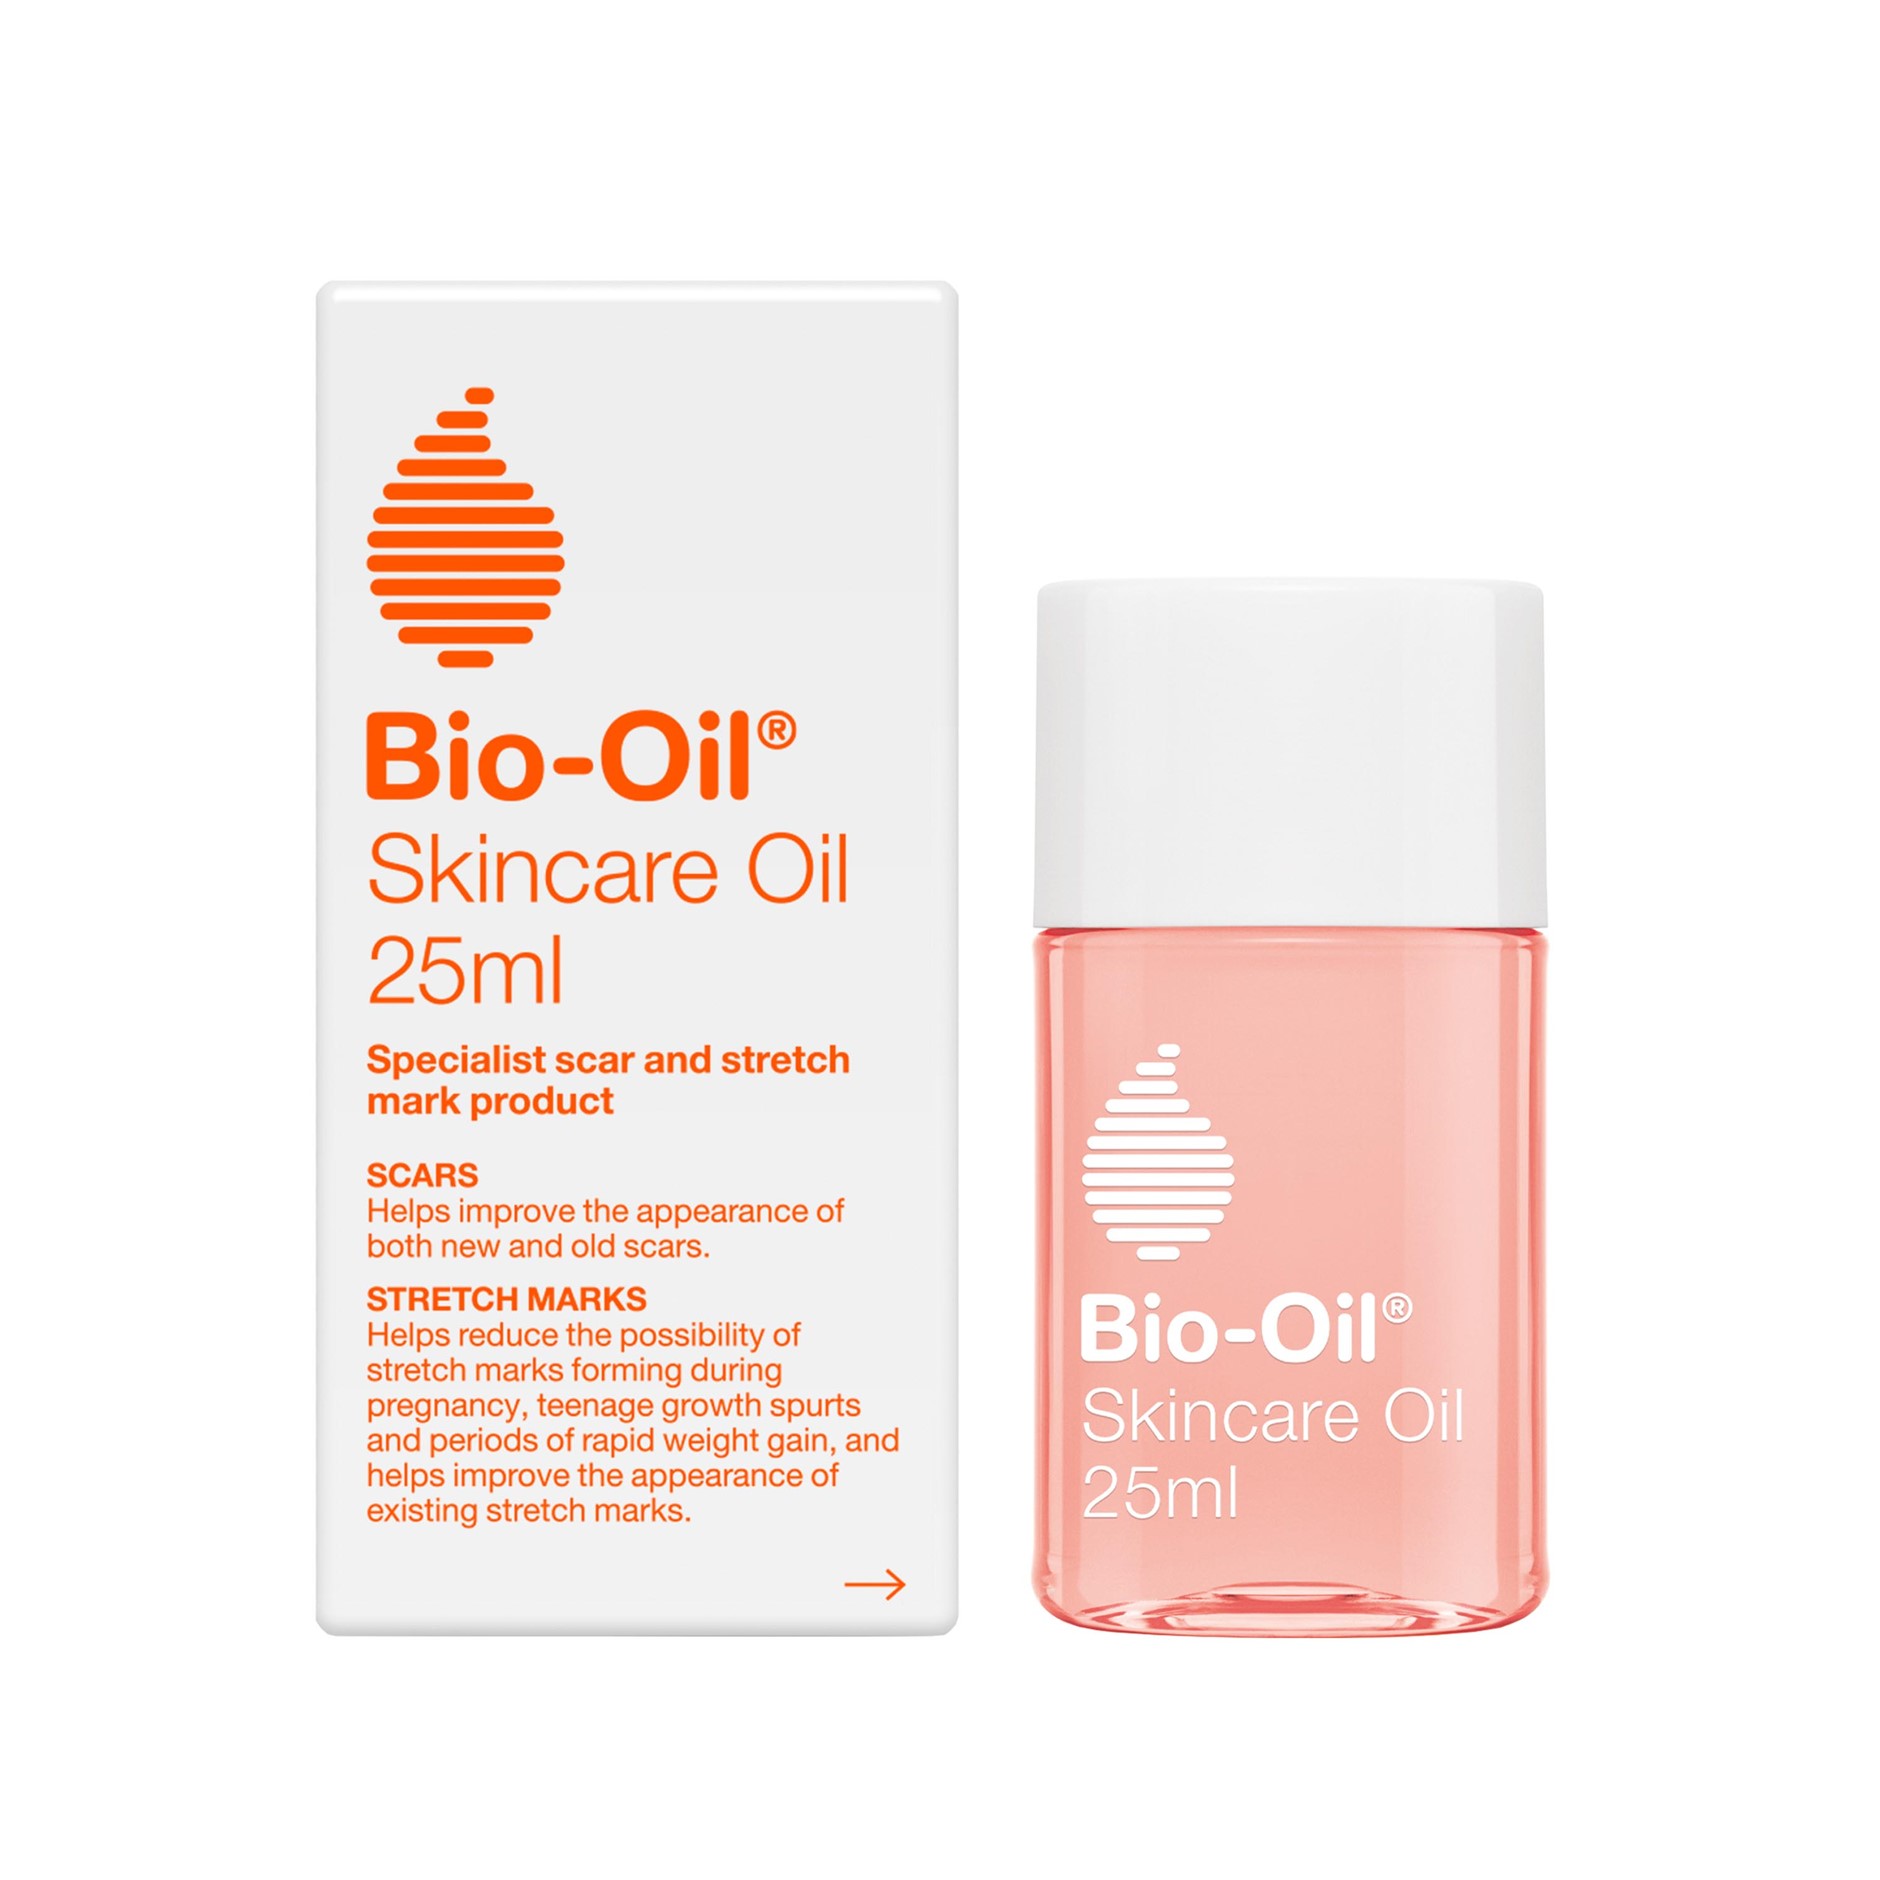 BIO Oil Natural Skincare Oil 25ml